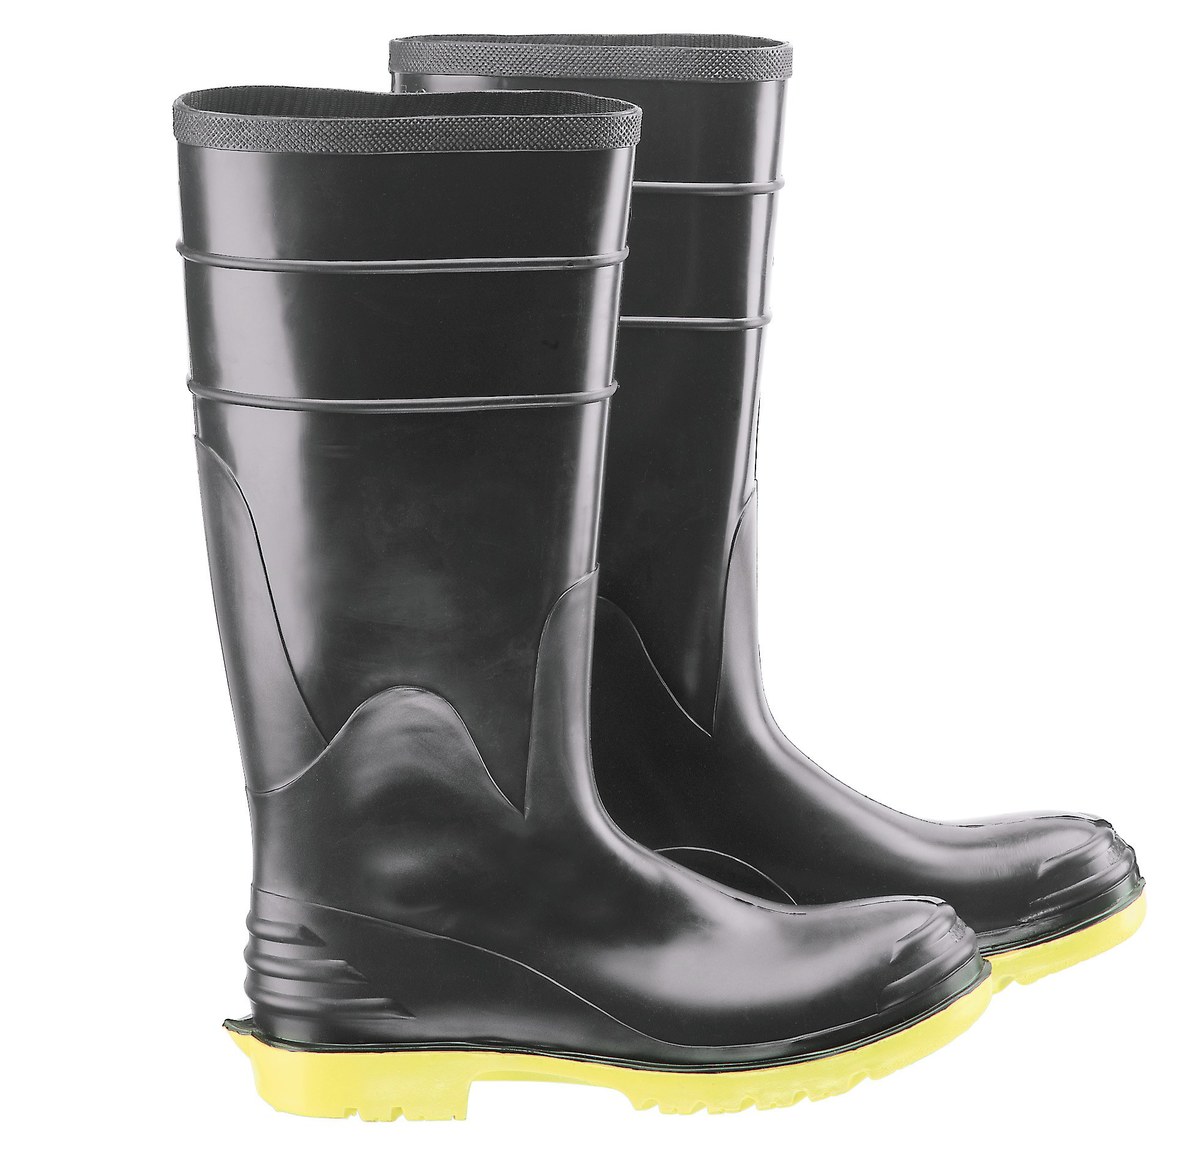 dunlop boots yellow